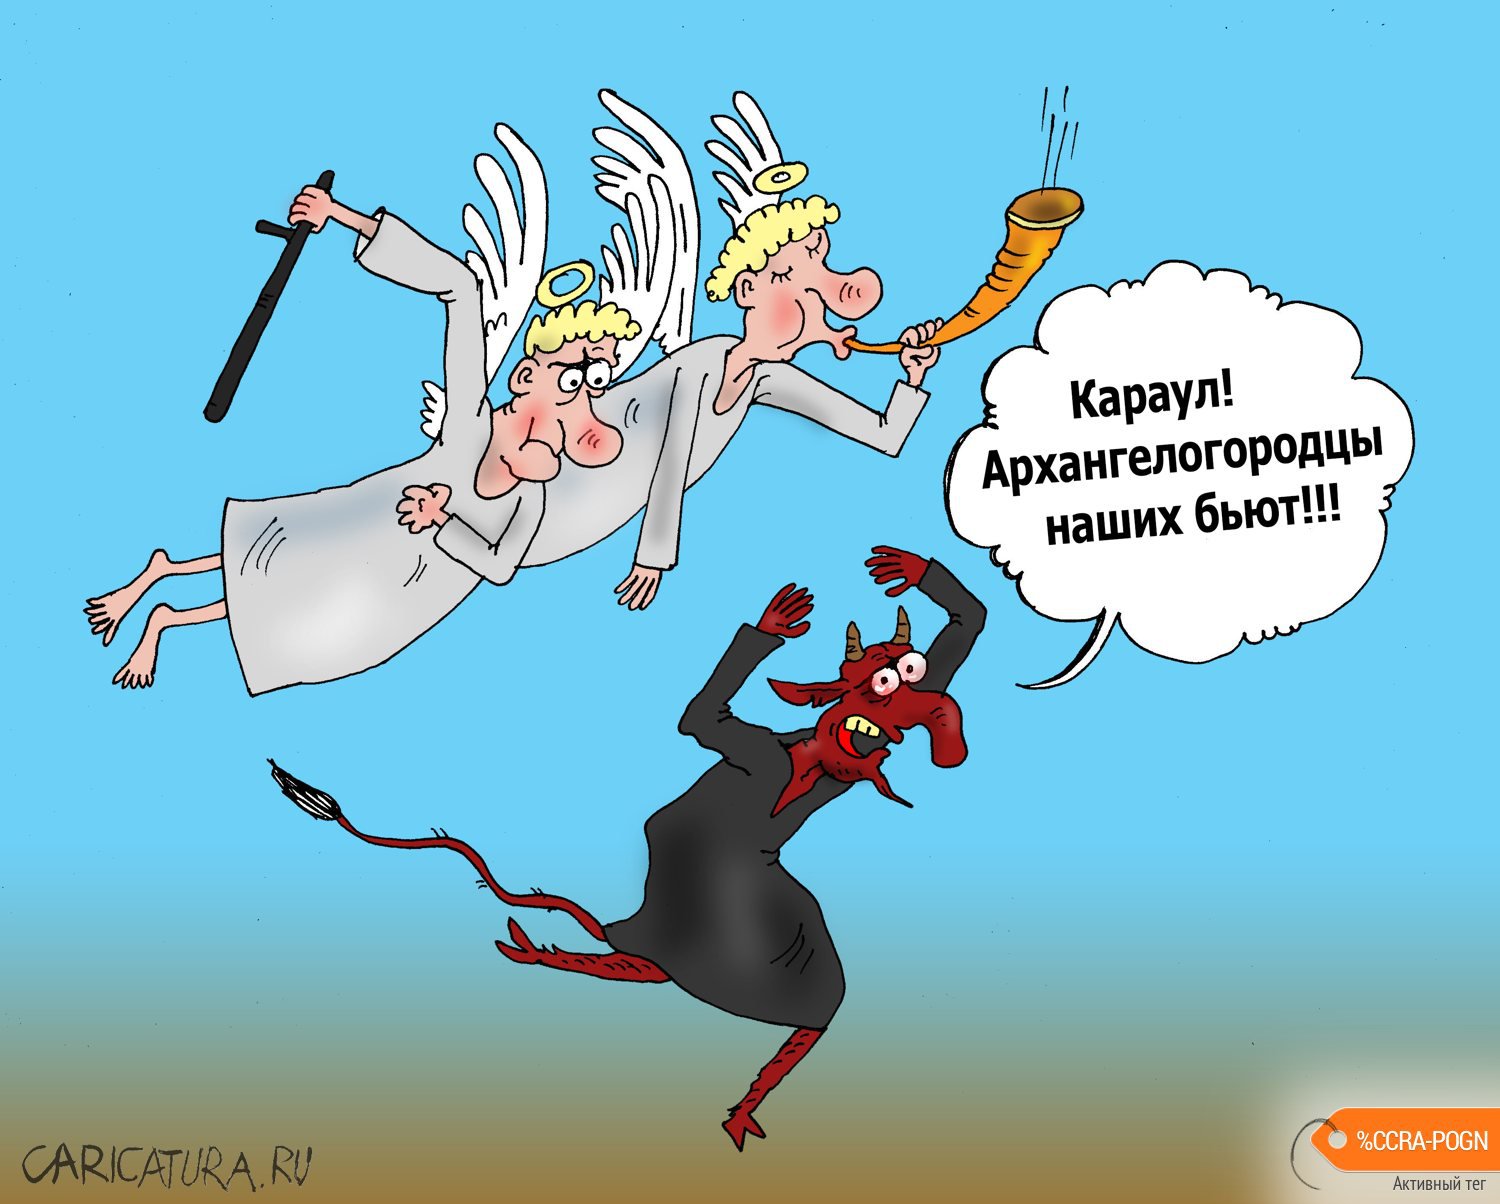 Карикатура "Архангелы в городе", Валерий Тарасенко